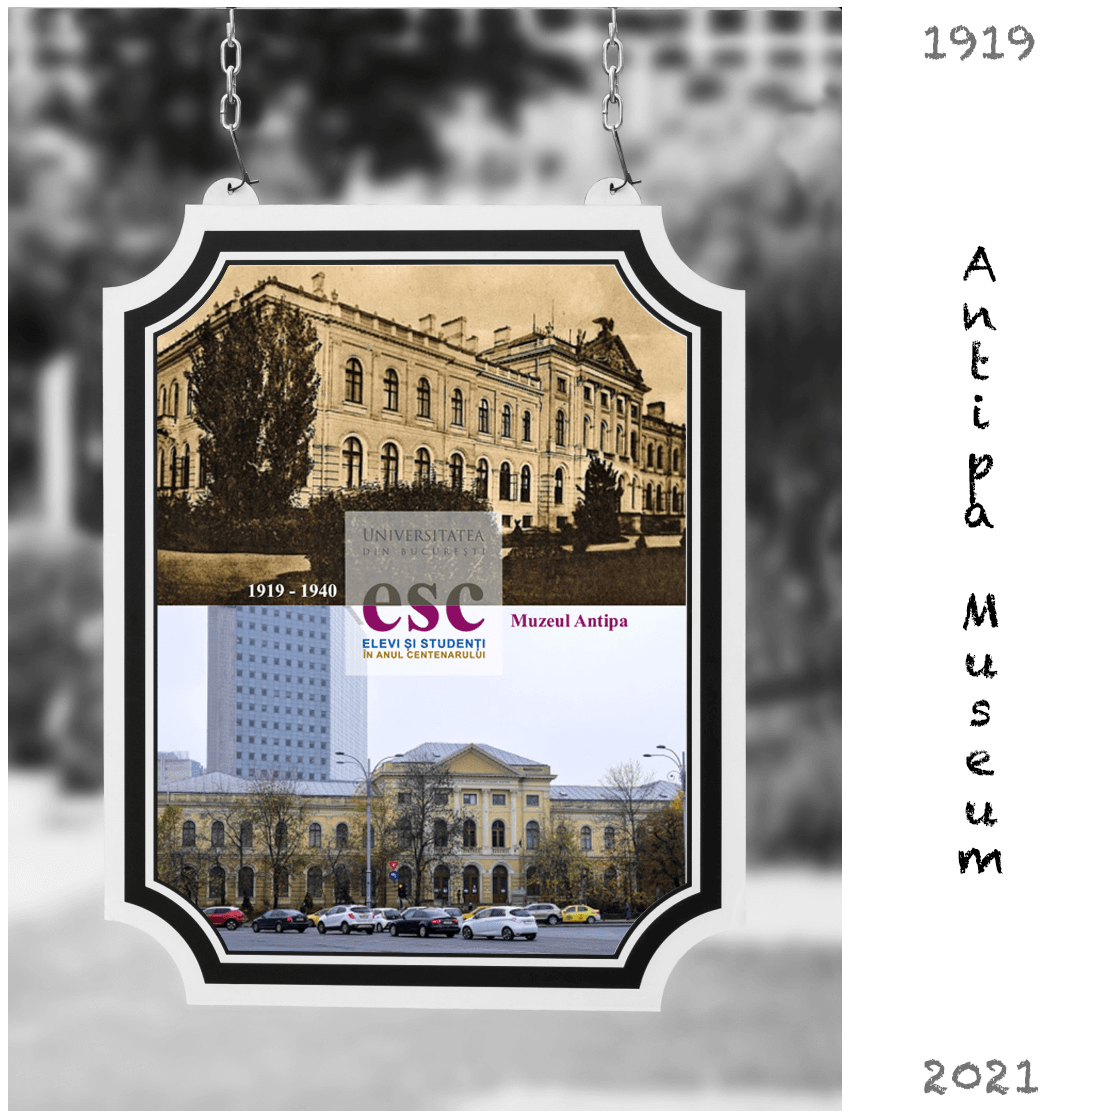 Bucharest Antipa Museum - 1900 - 2019